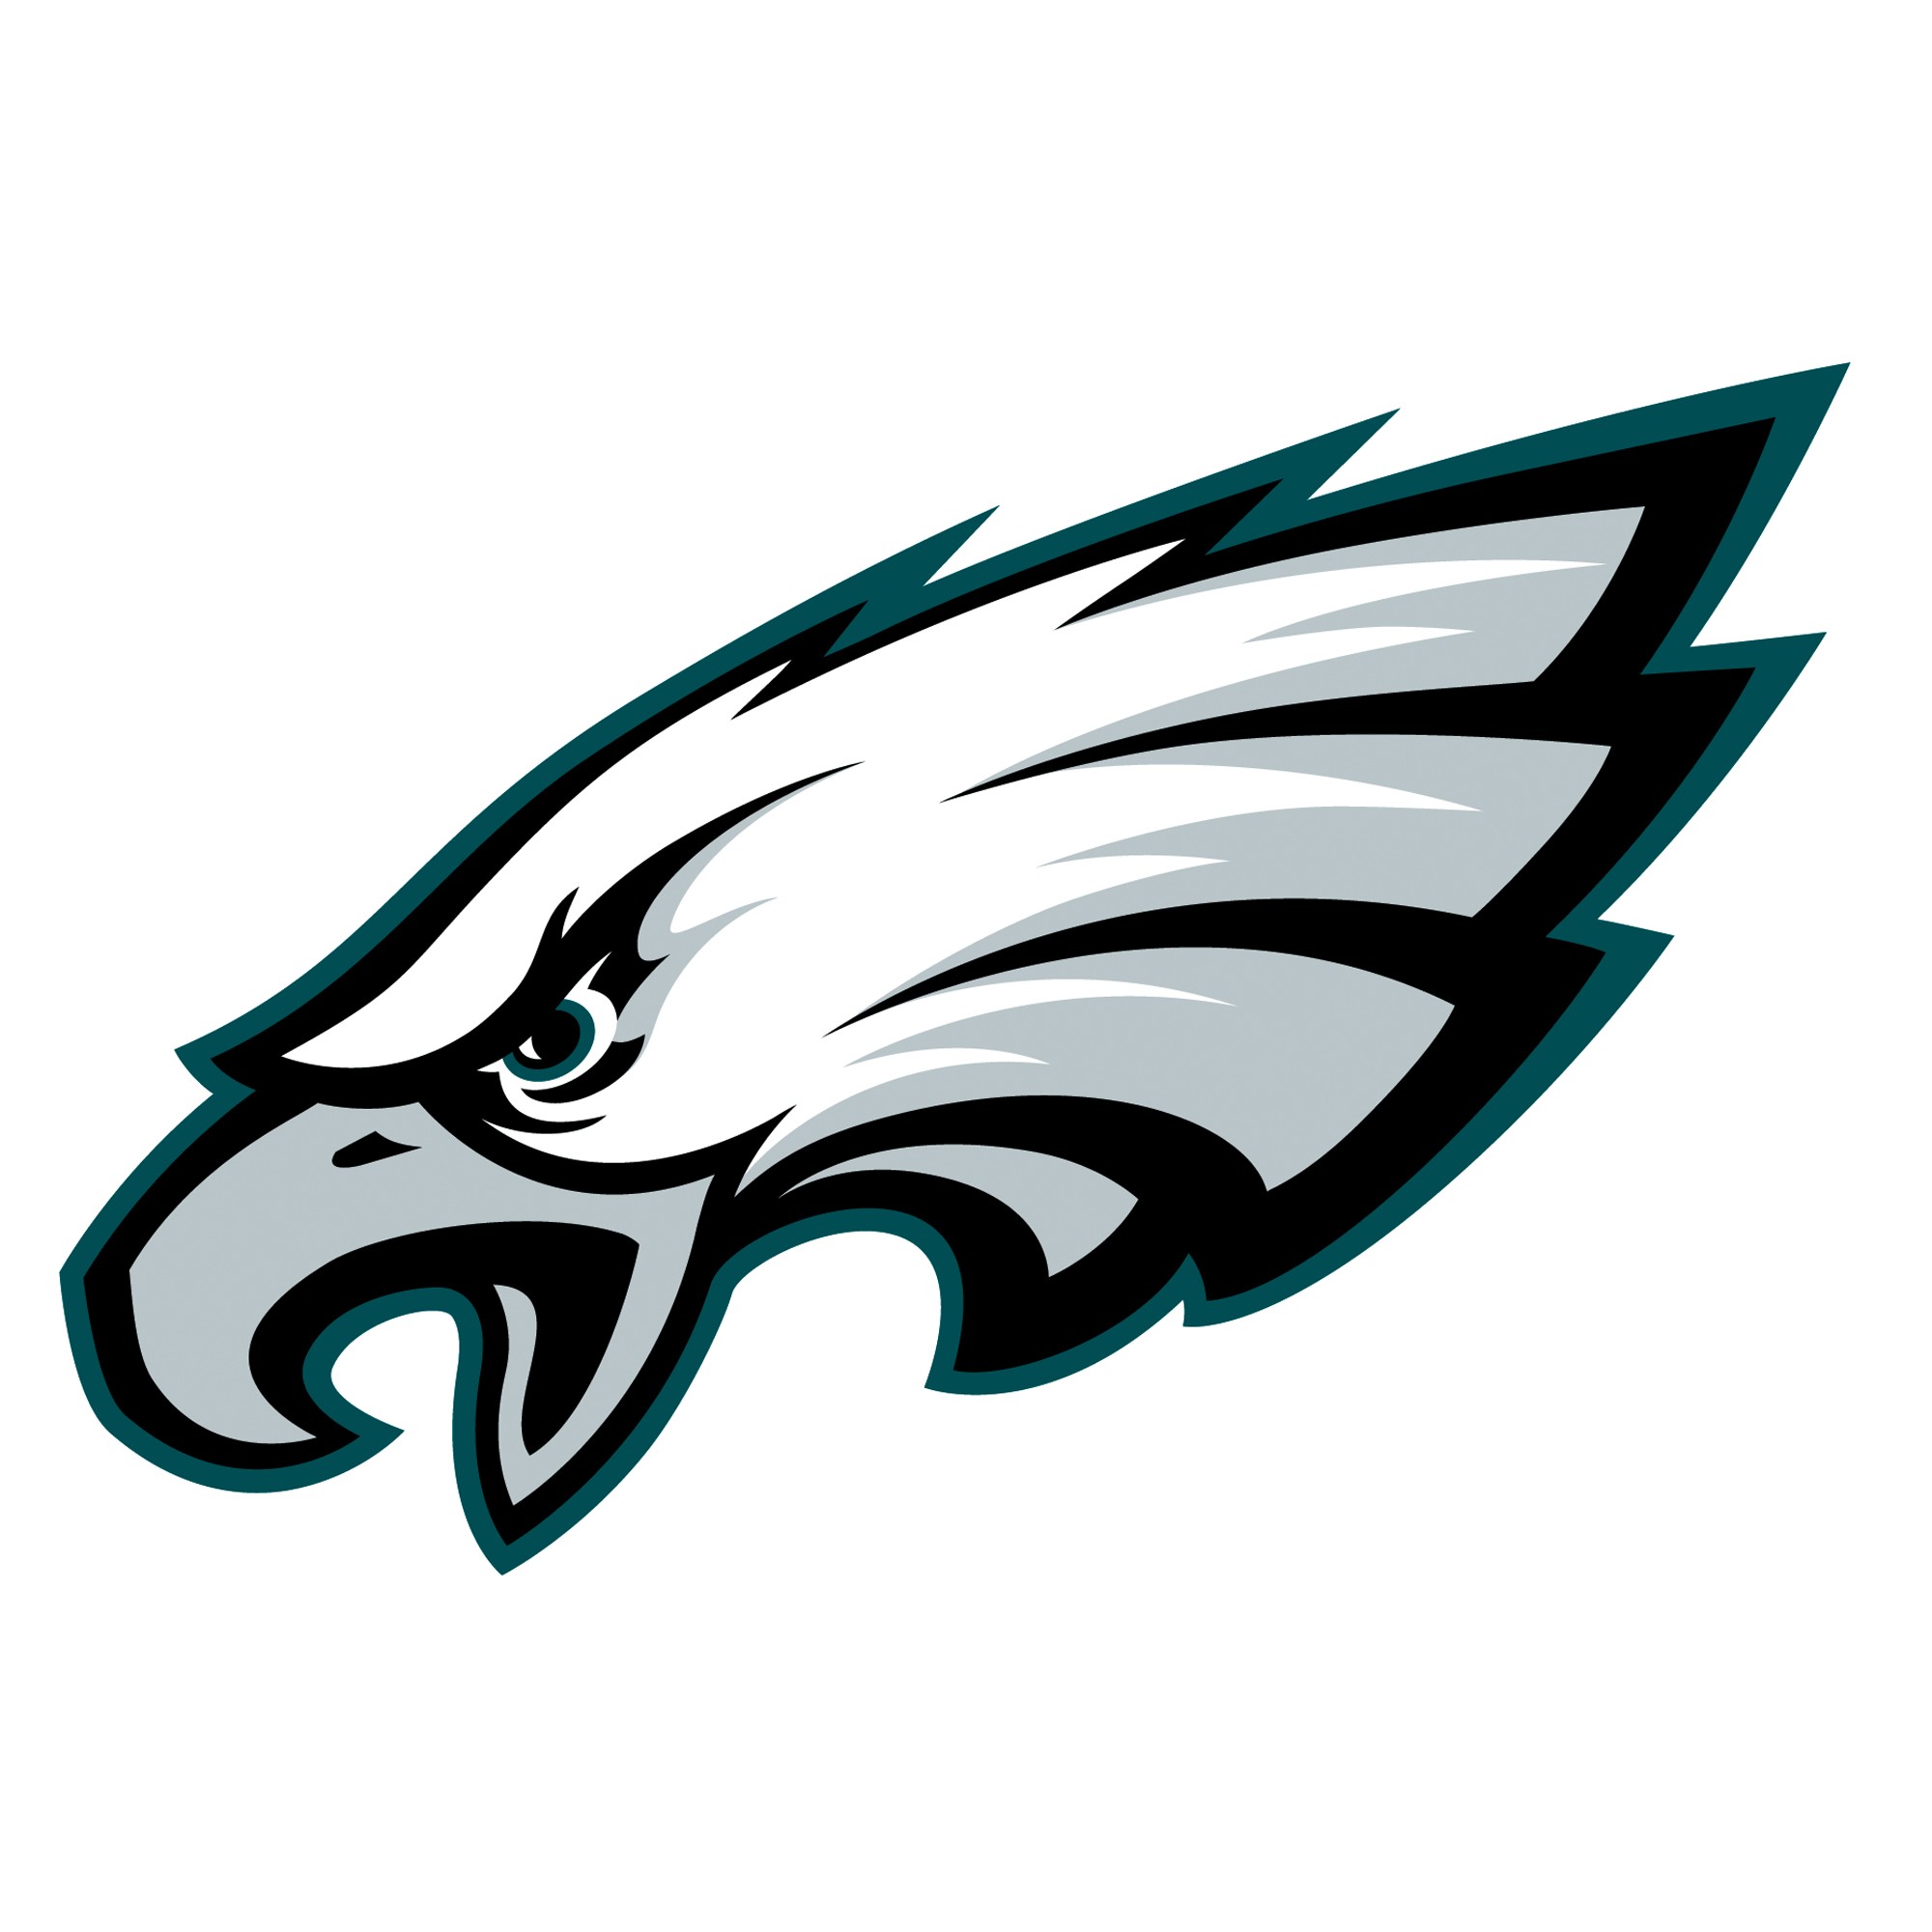 Philadelphia Eagles, NFL, American football, Logotype, Eagle, City Wallpaper